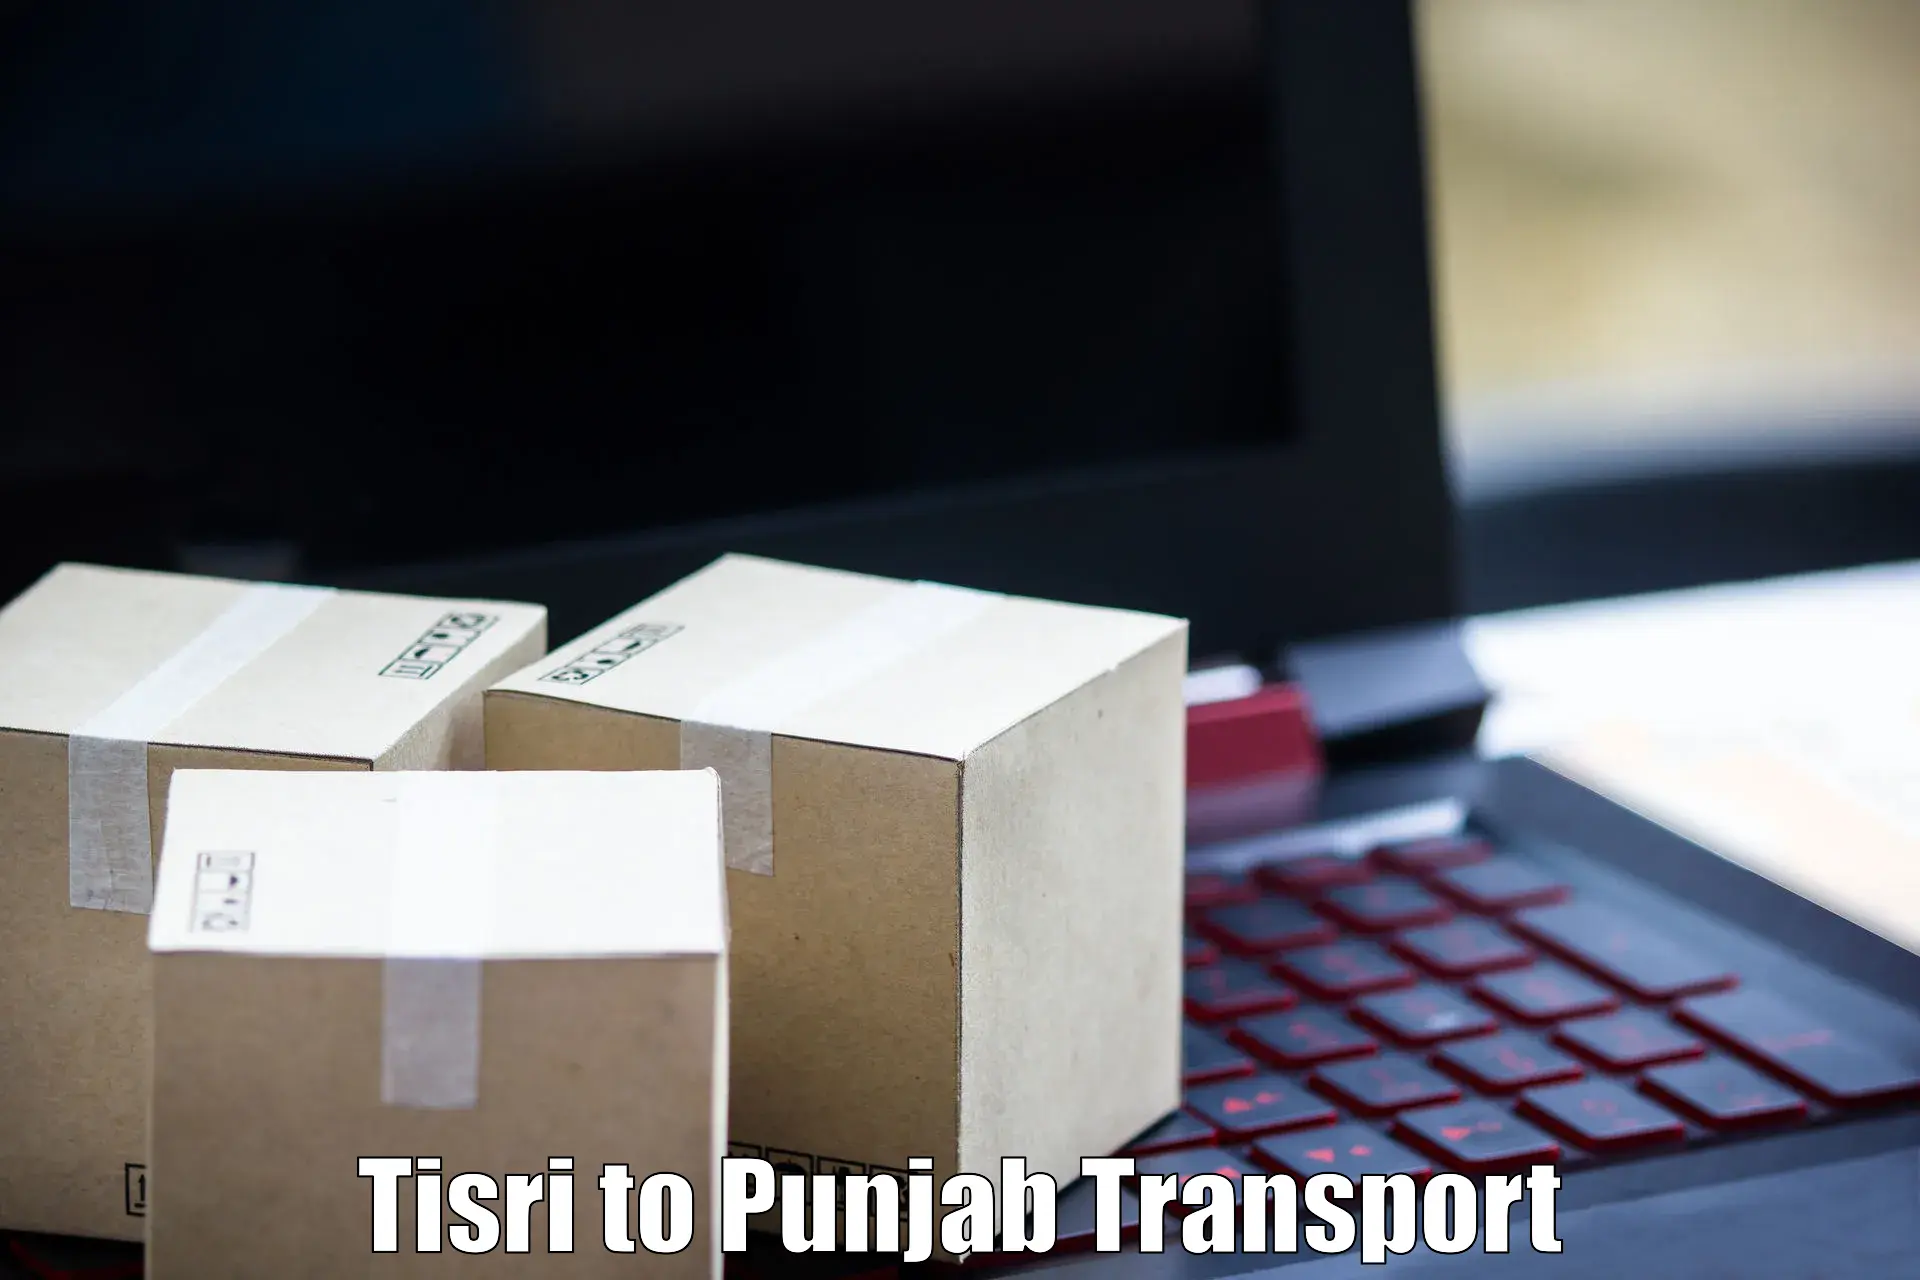 Online transport booking Tisri to Punjab